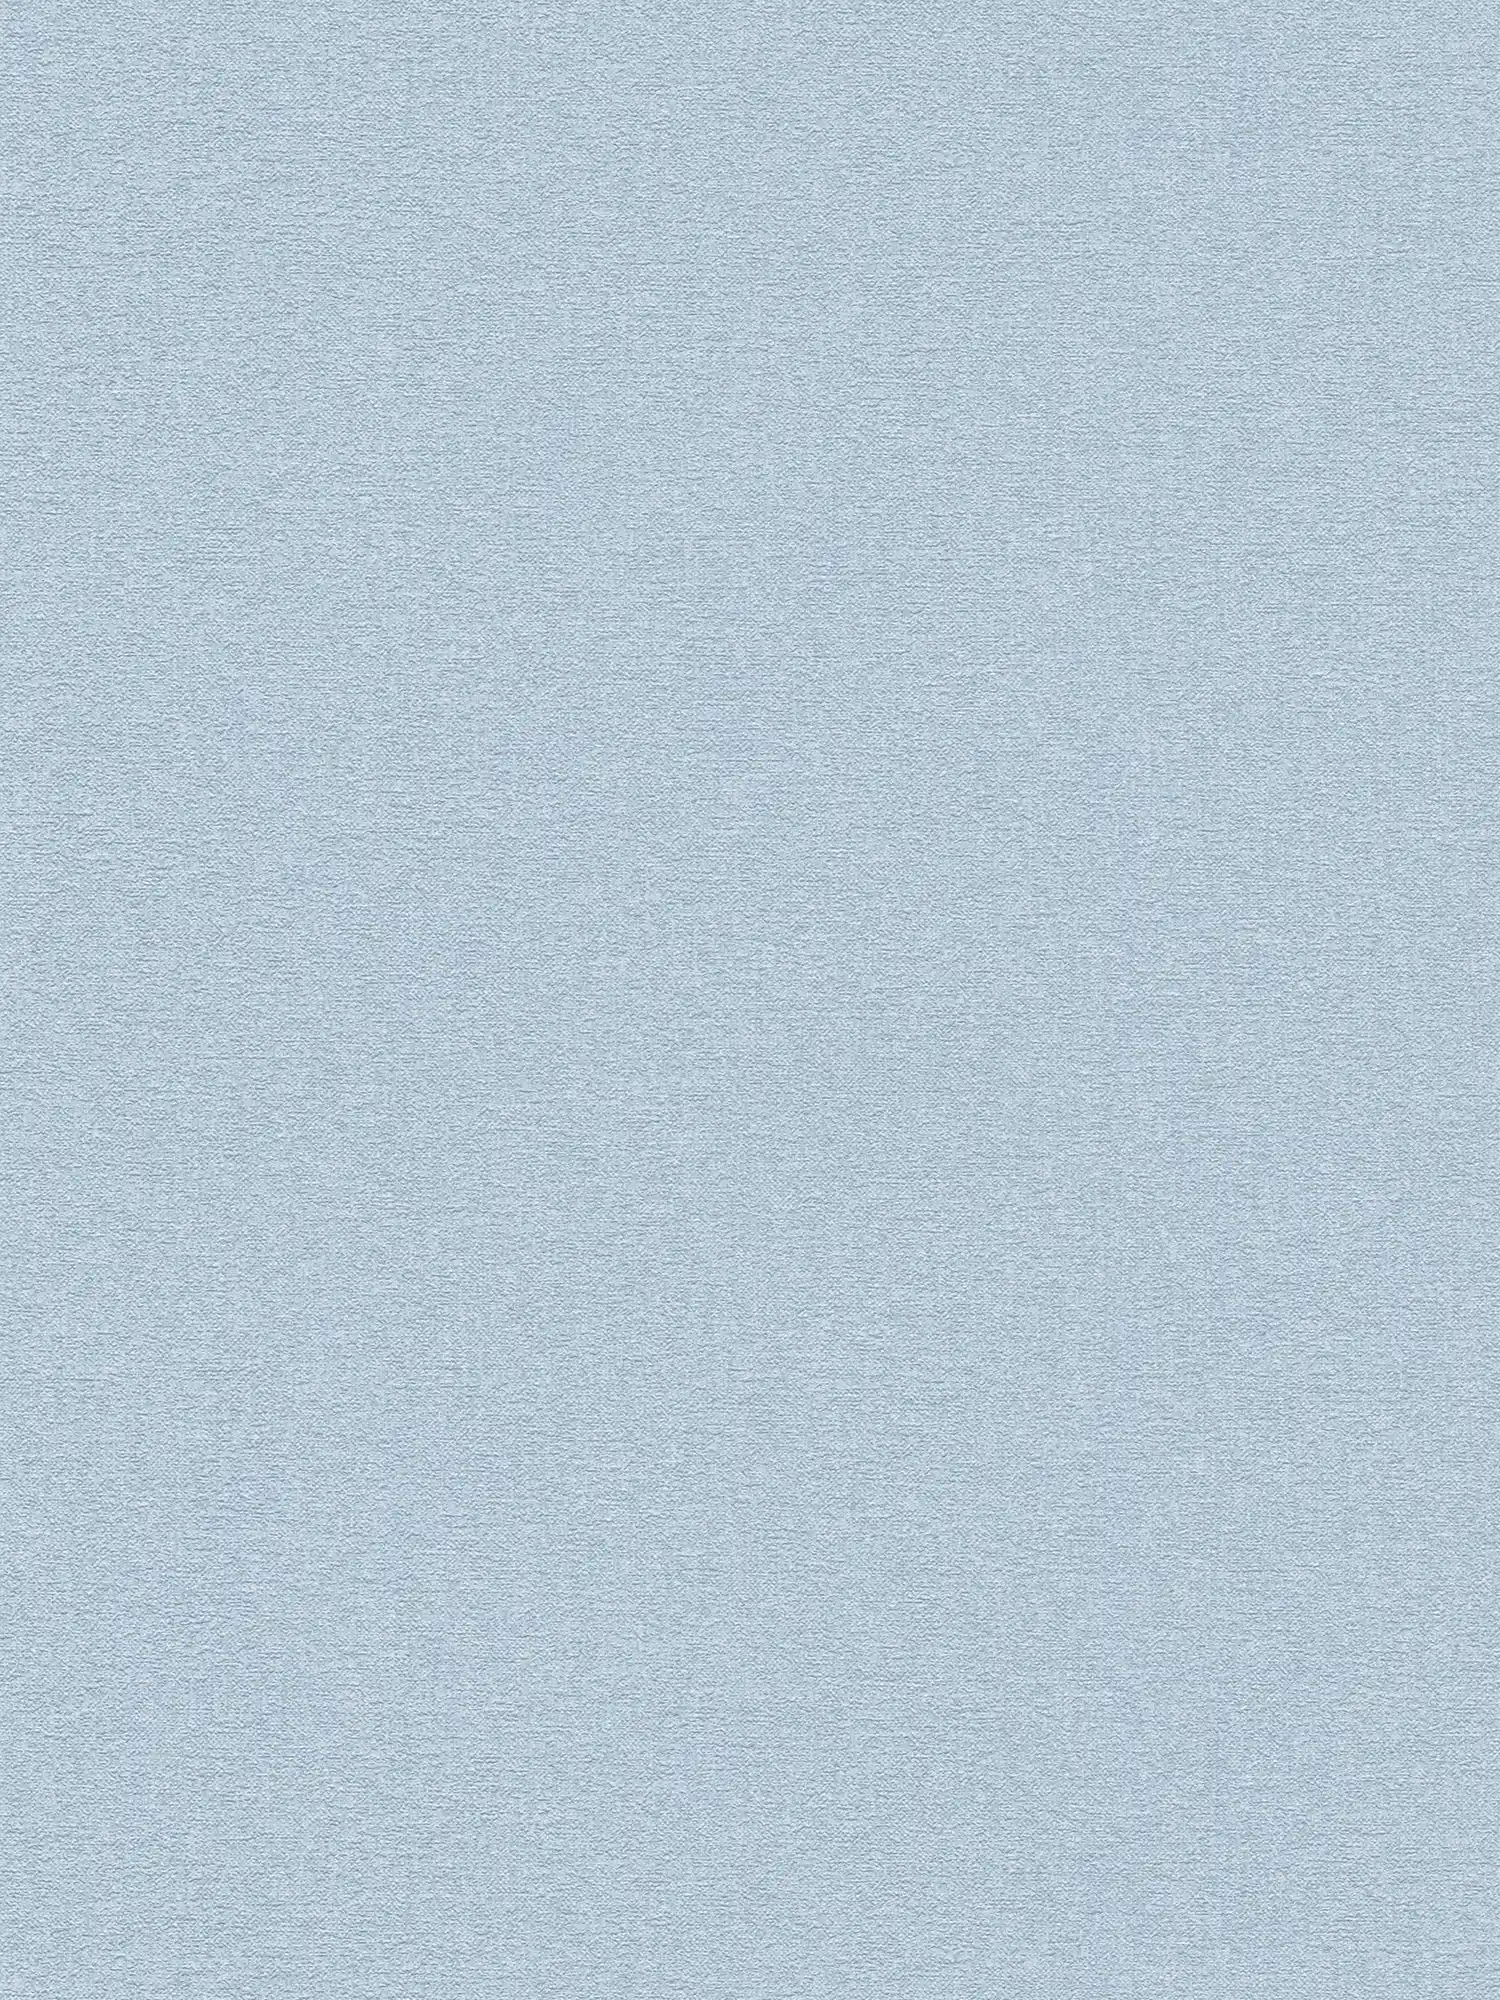 Papier peint intissé à motifs structurés uni - bleu clair
